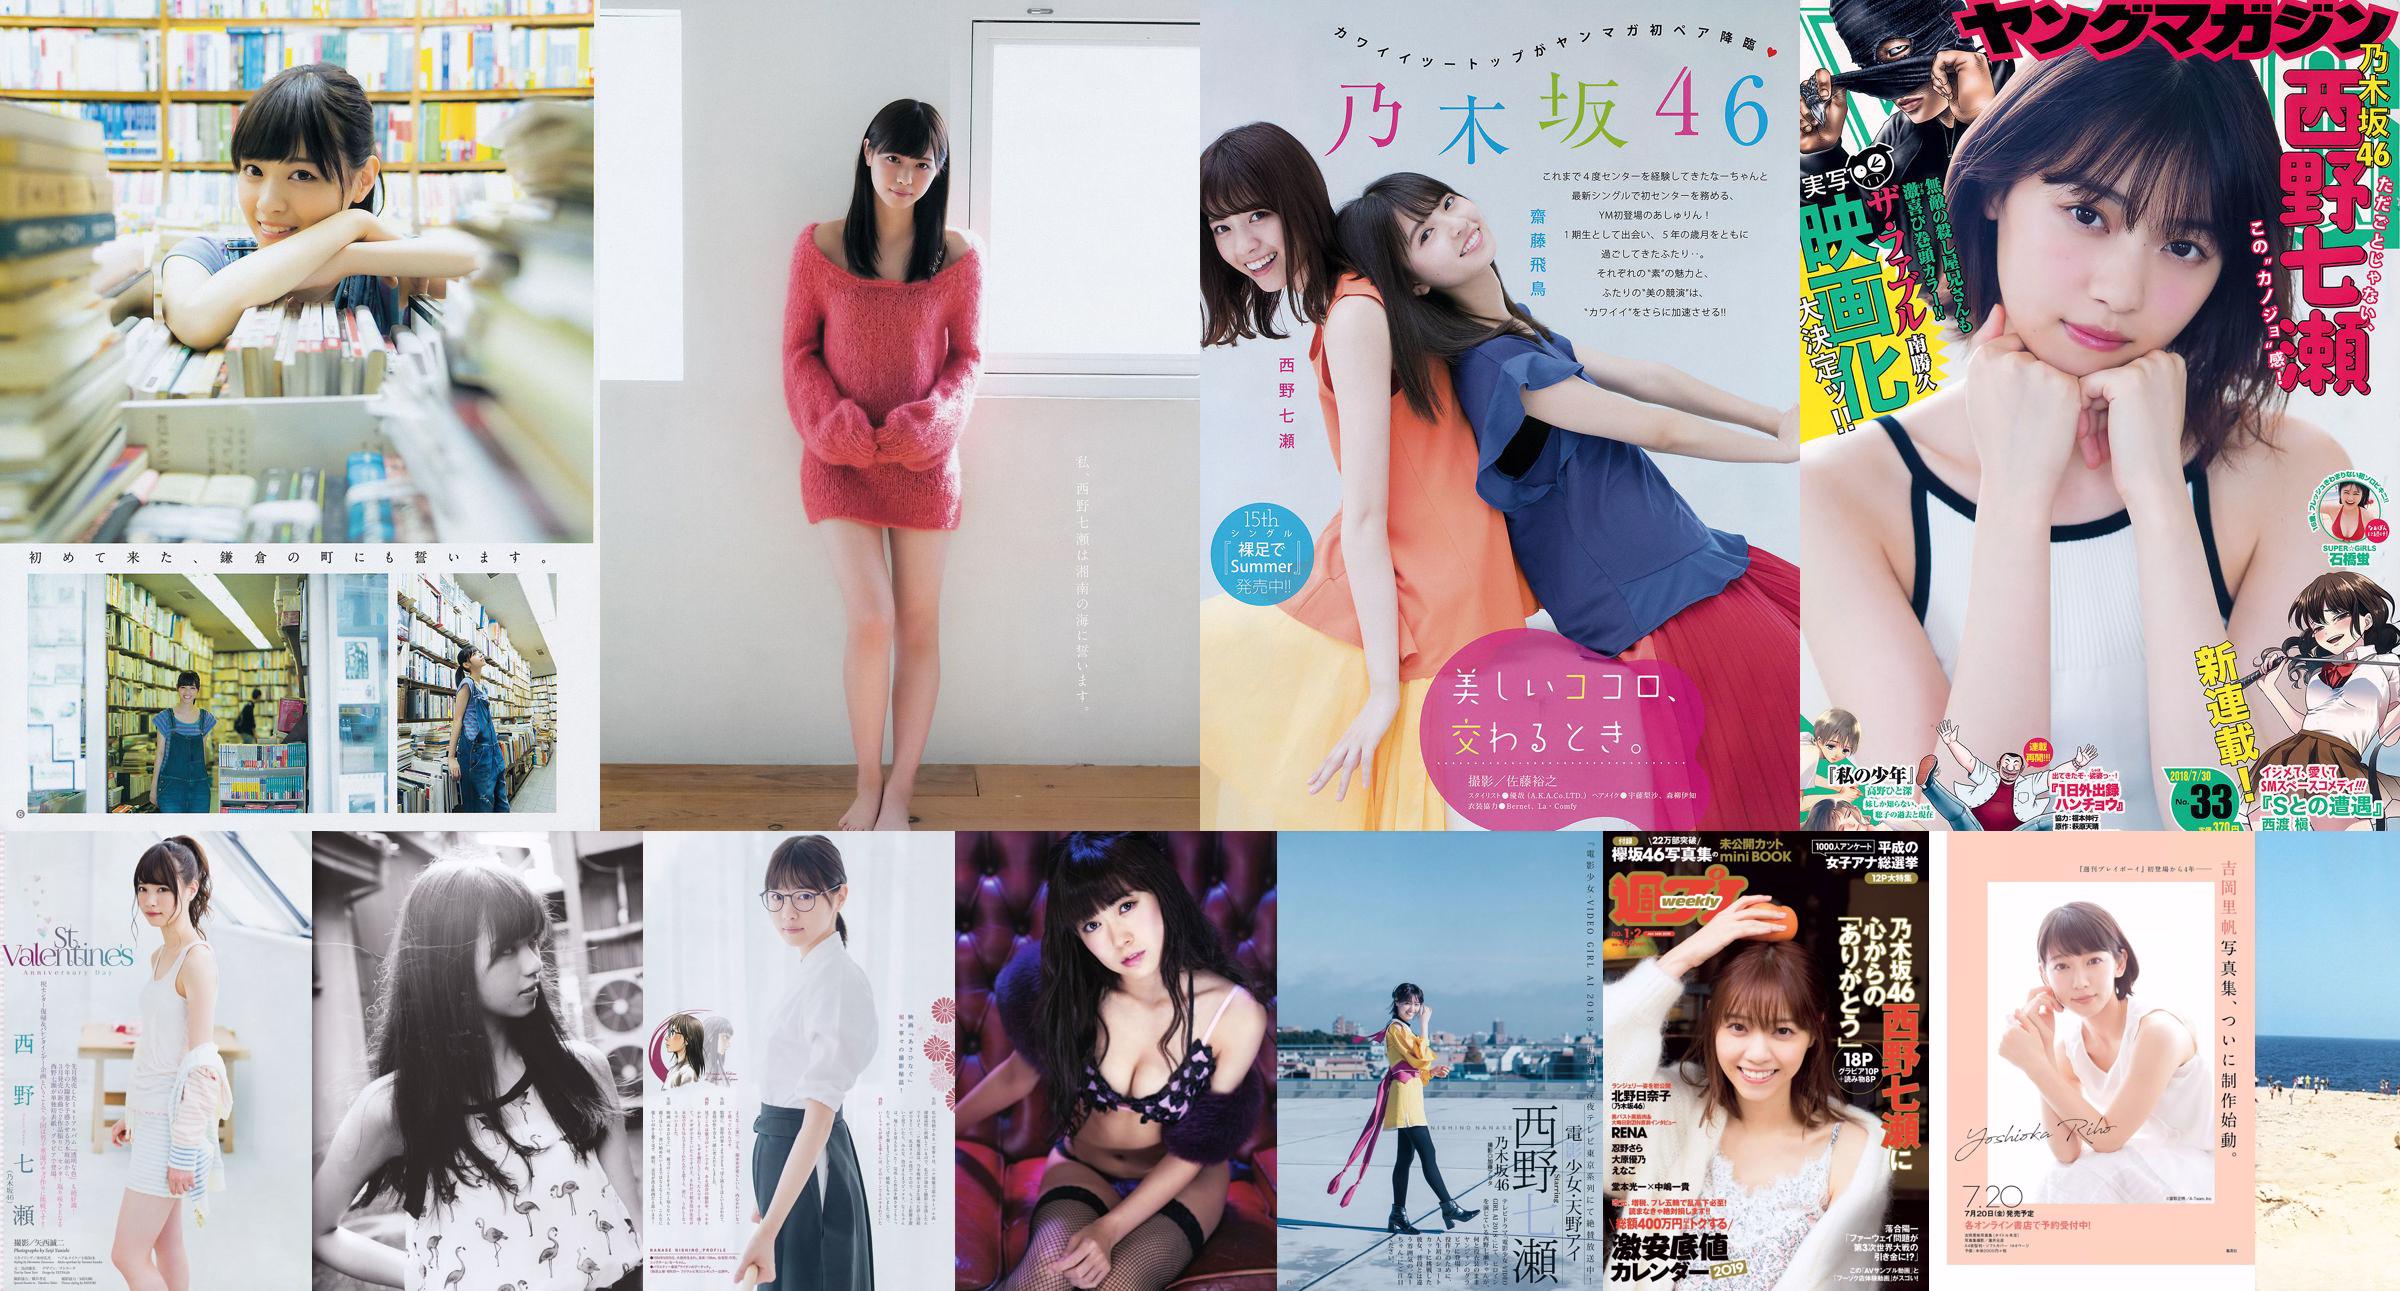 [Young Magazine] Nanase Nishino Nana Hashimoto 2015 No.16照片 No.26305f 第1頁